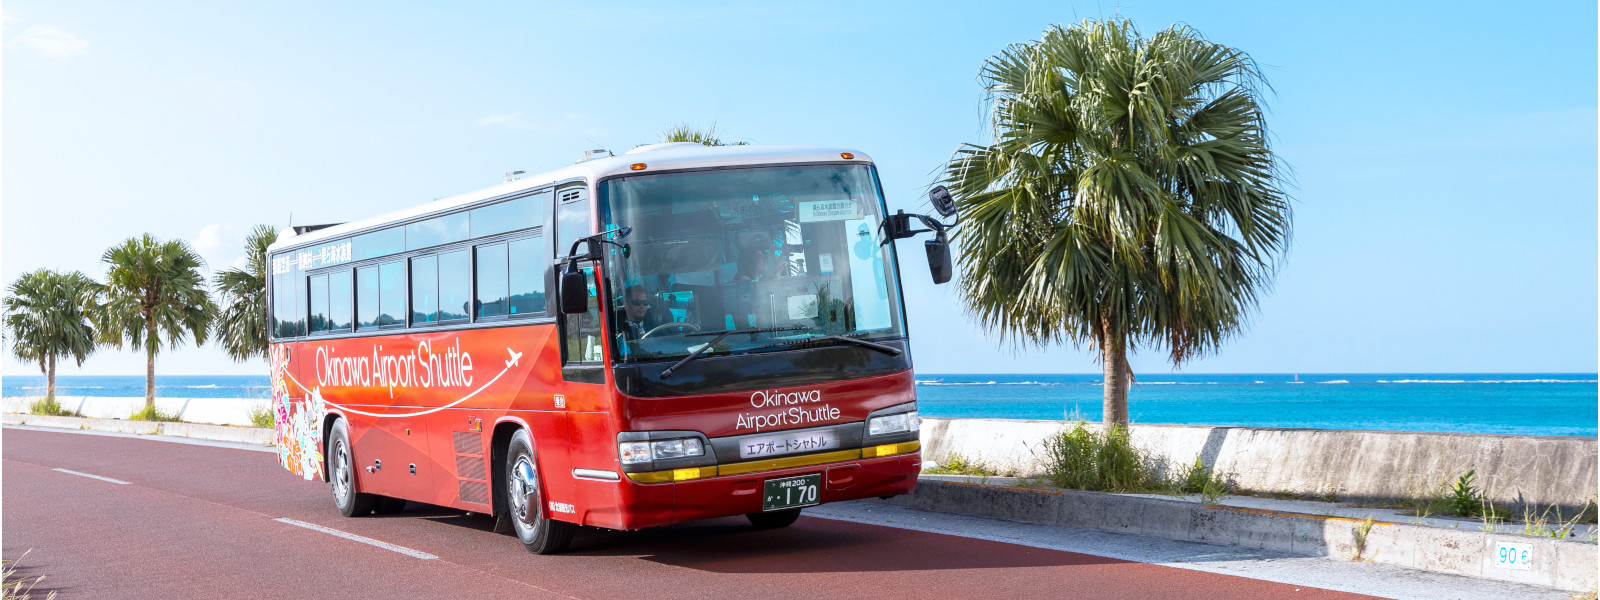 長距離路線バス沖縄エアポートシャトルバス